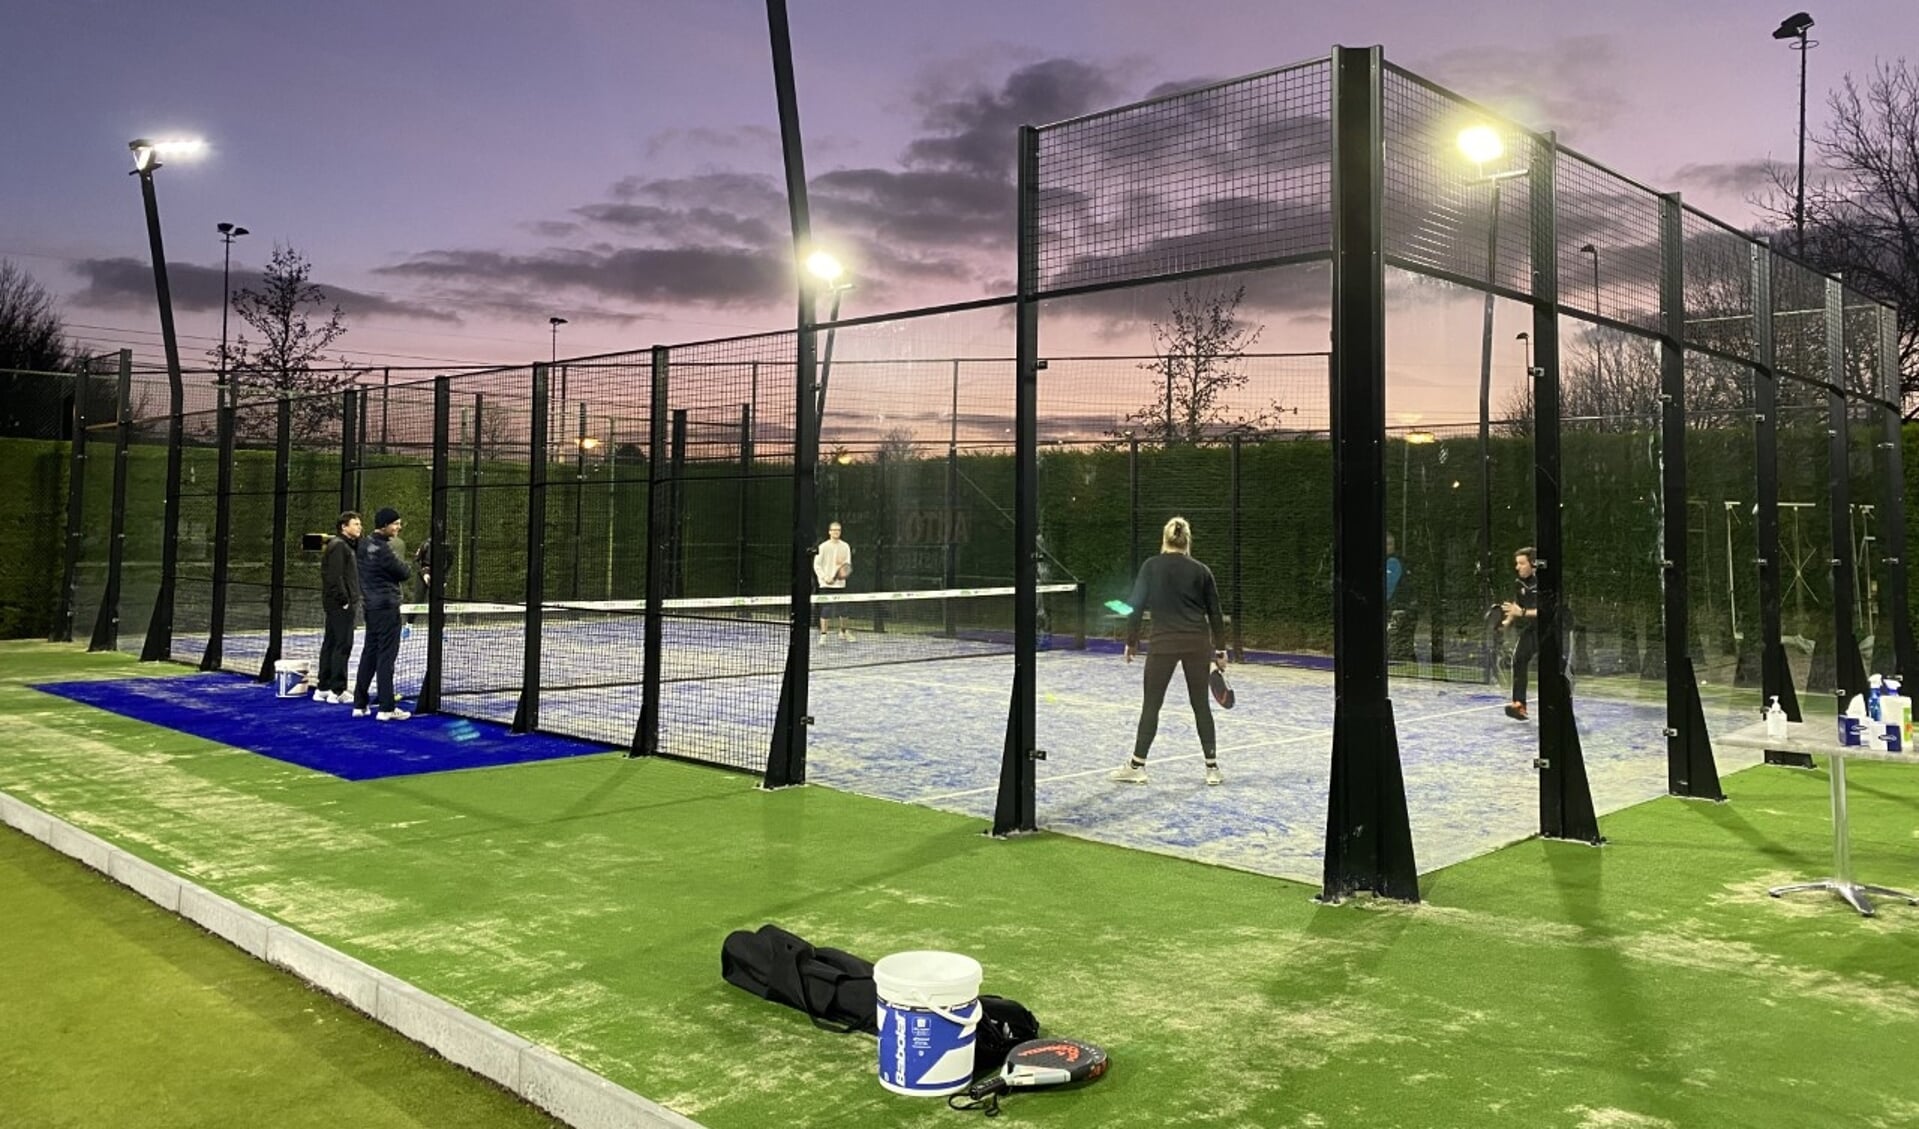 Aanstaande zondag worden de nieuwe padelbanen bij Tennis- en Padelvereniging Engelen aan het Engelerpark 1 officieel geopend.